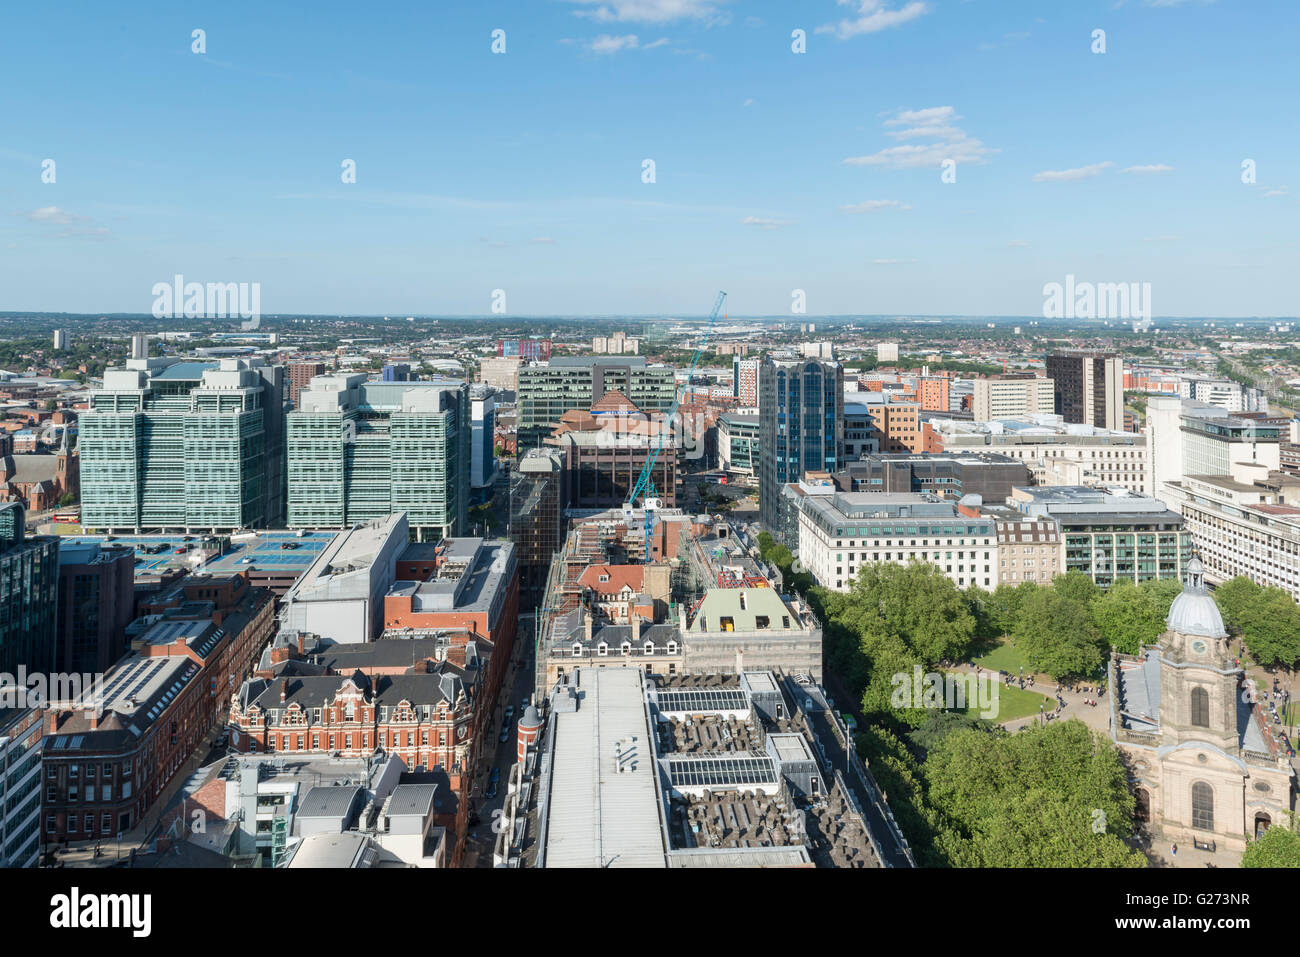 Photographie aérienne du centre-ville de Birmingham, Angleterre. Bureaux de Snowhill et cathédrale Saint-Phillips Banque D'Images